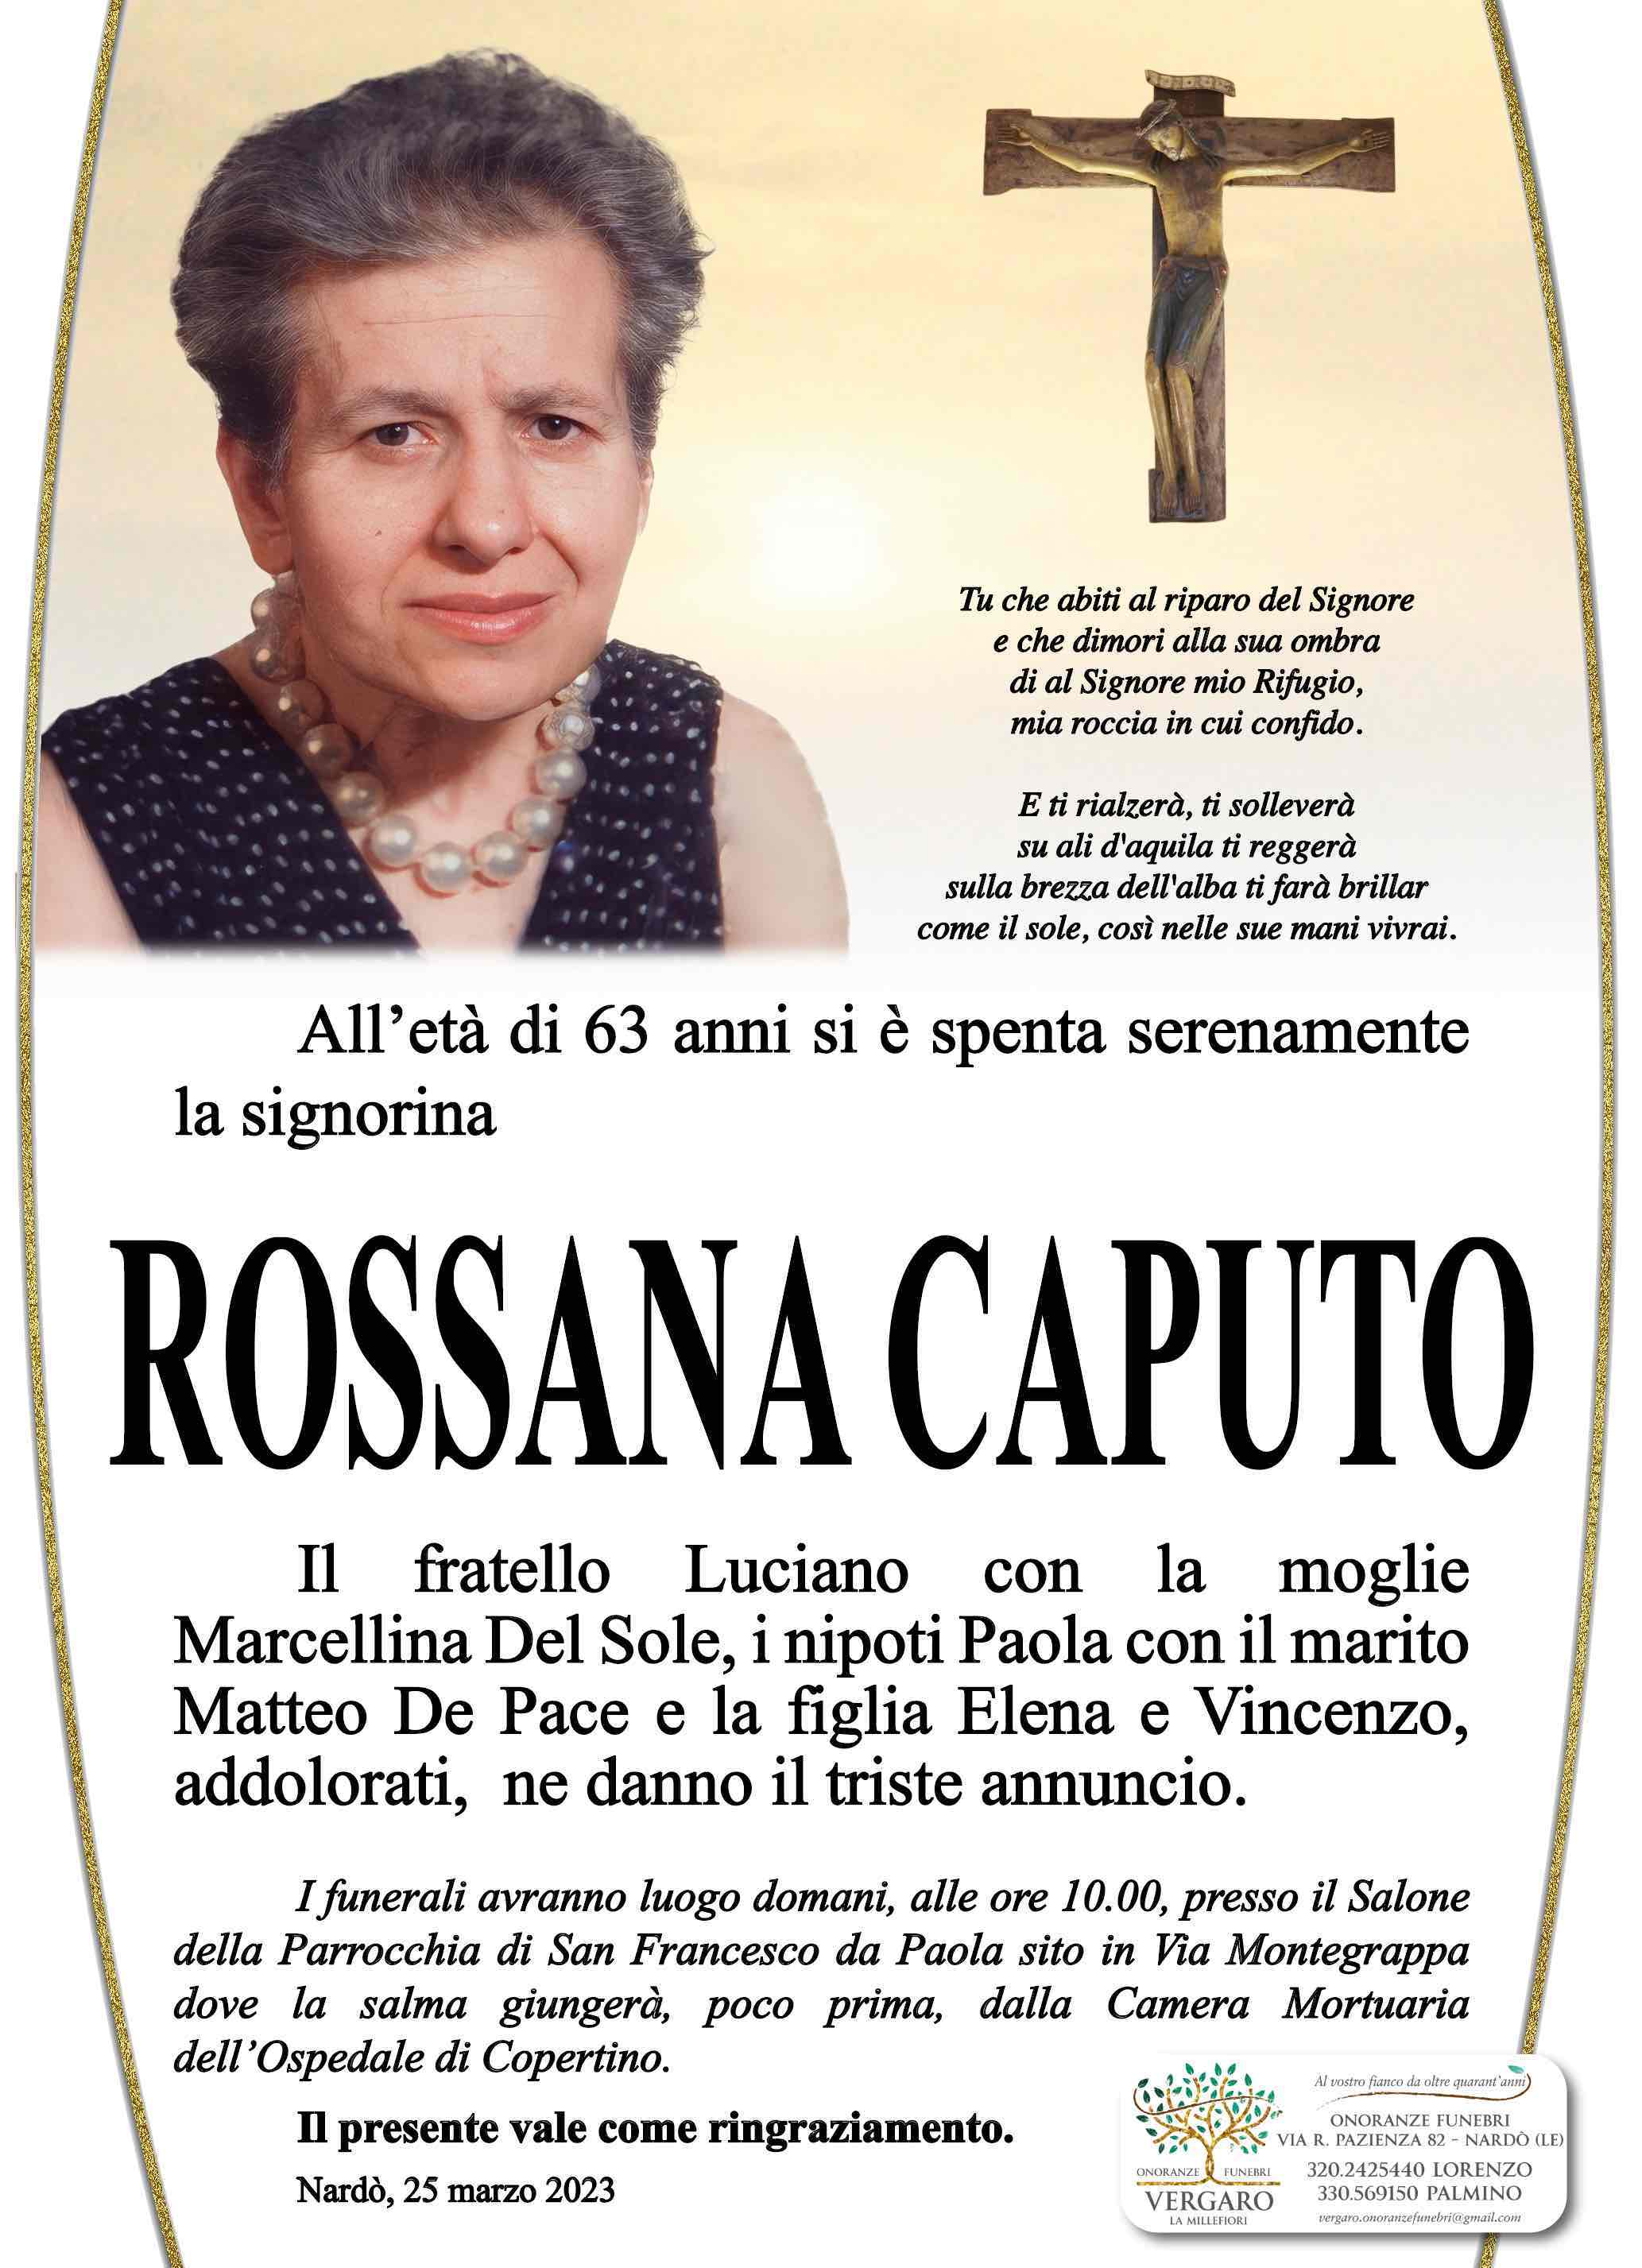 Rossana Caputo